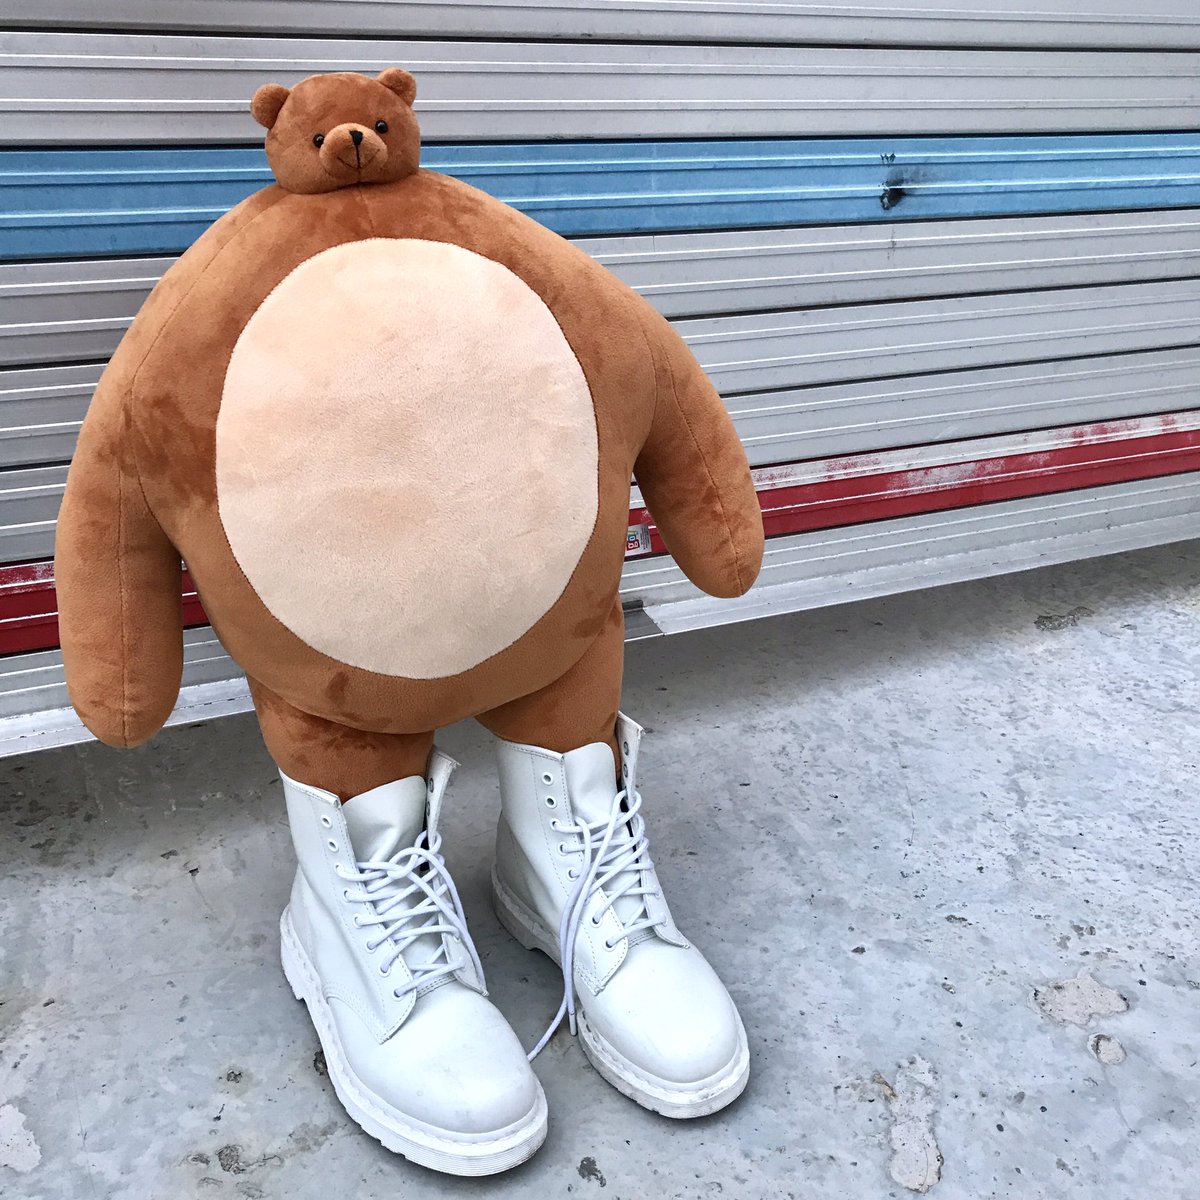 Big Body Meme - 2yamaha.com Best Teddy Bear Small Head in 2020 Buff teddy b...